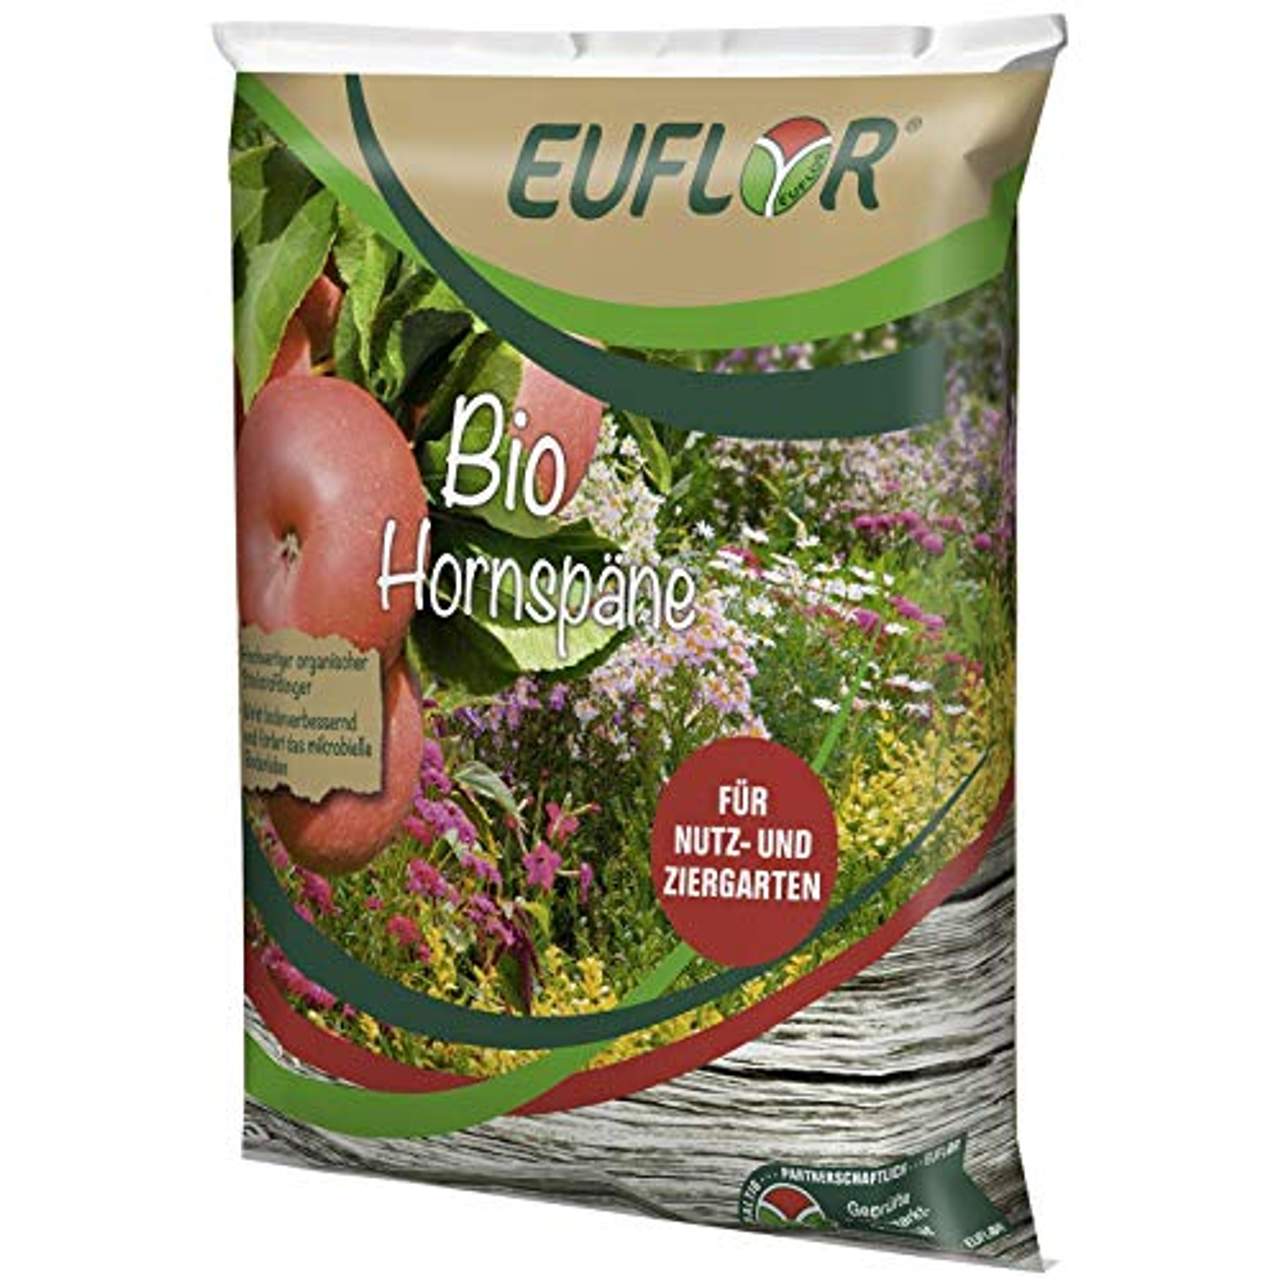 Euflor Bio Hornspäne 100% 5kg Sack